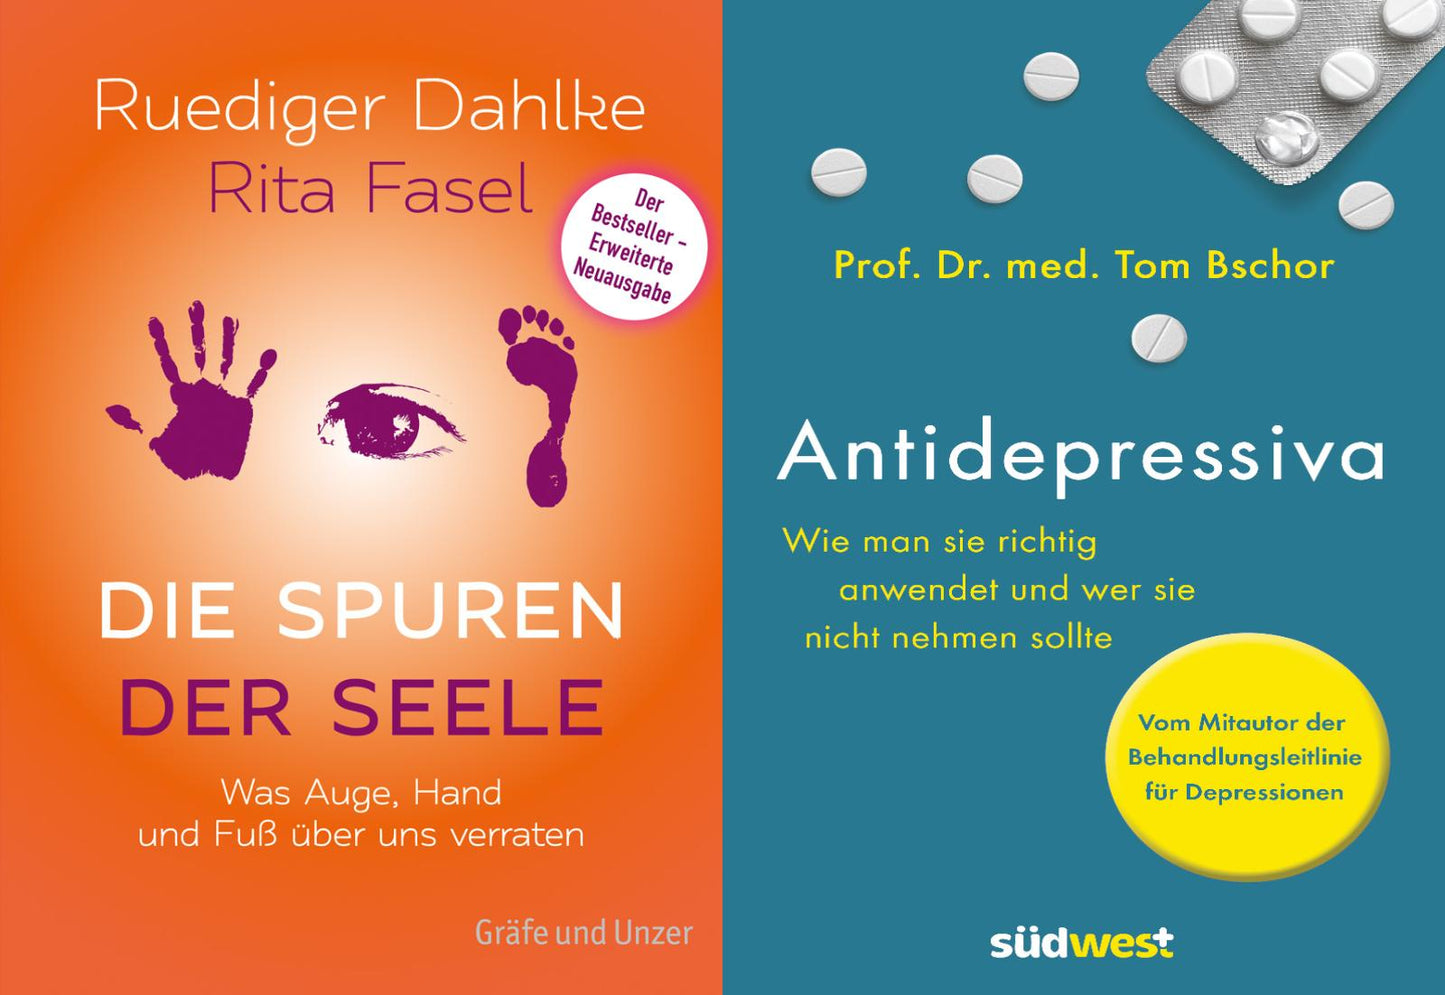 Die Spuren der Seele + Antidepressiva im Set plus 1 exklusives Postkartenset